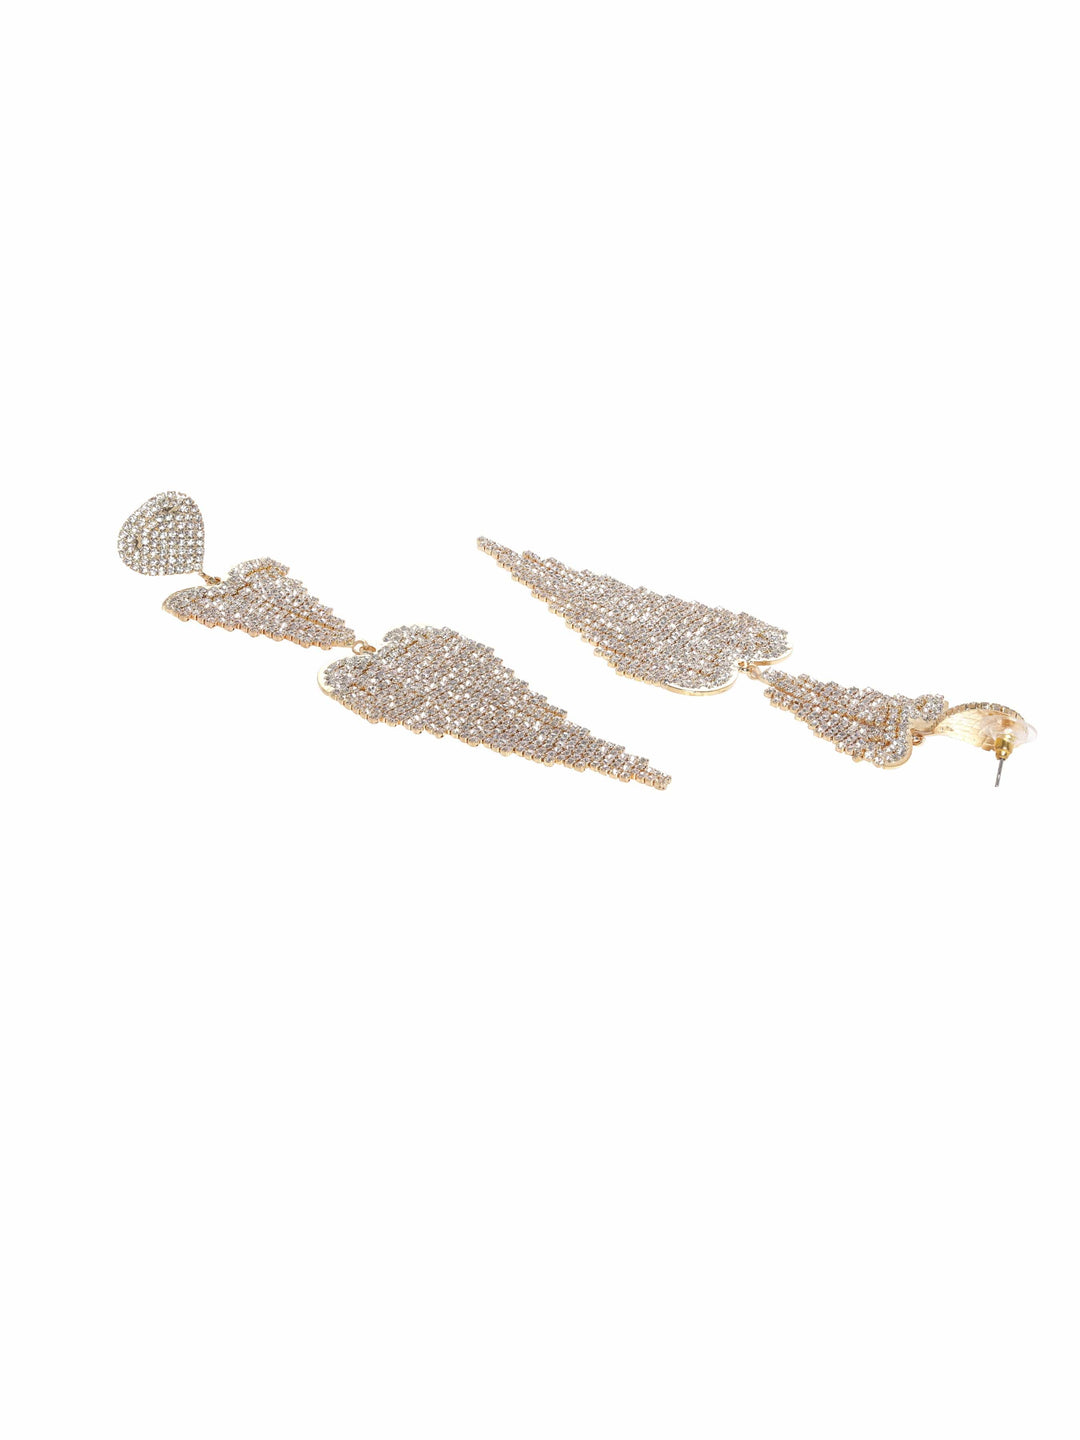 Glamourous Gilded Cascade Earrings Drop Earrings